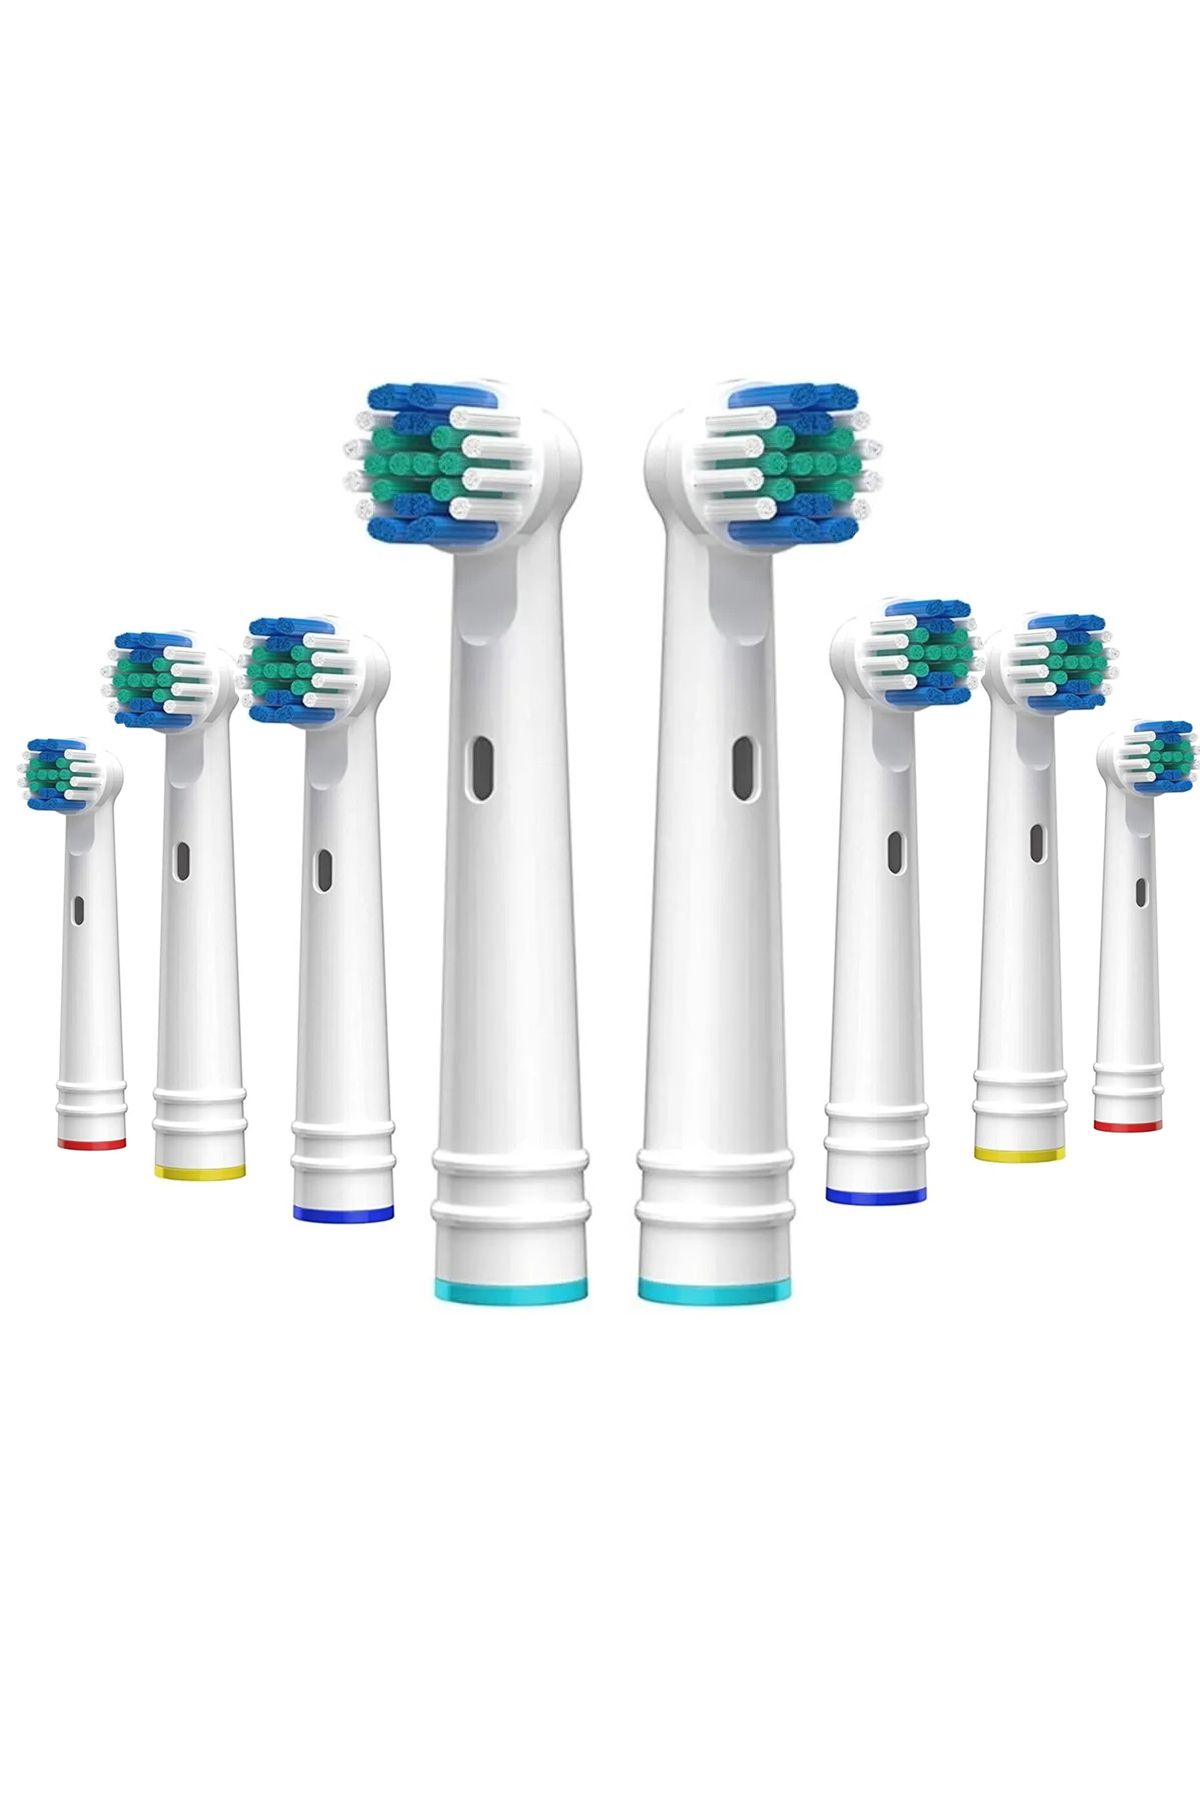 Benefse Şarjlı Pilli Diş Fırçası Yedek Başlık Fırça Başlığı 8 Adet Muadil Set Oral B Philips Uyumlu